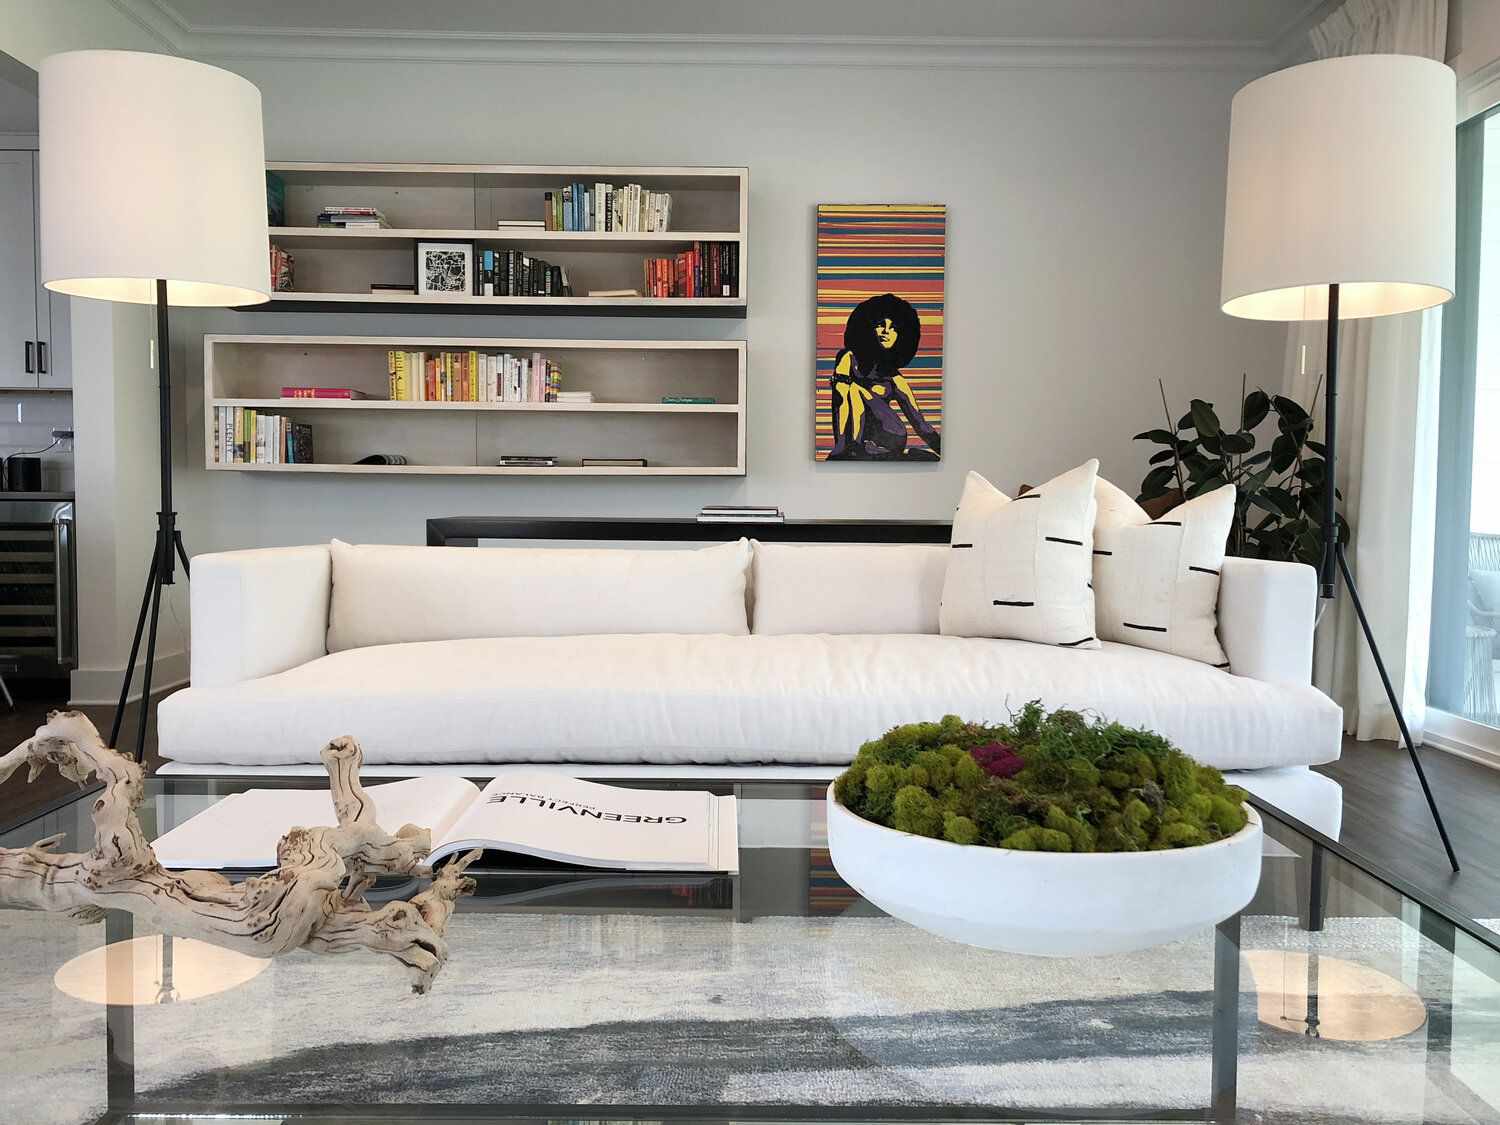 How To Design A Contemporary Living Room